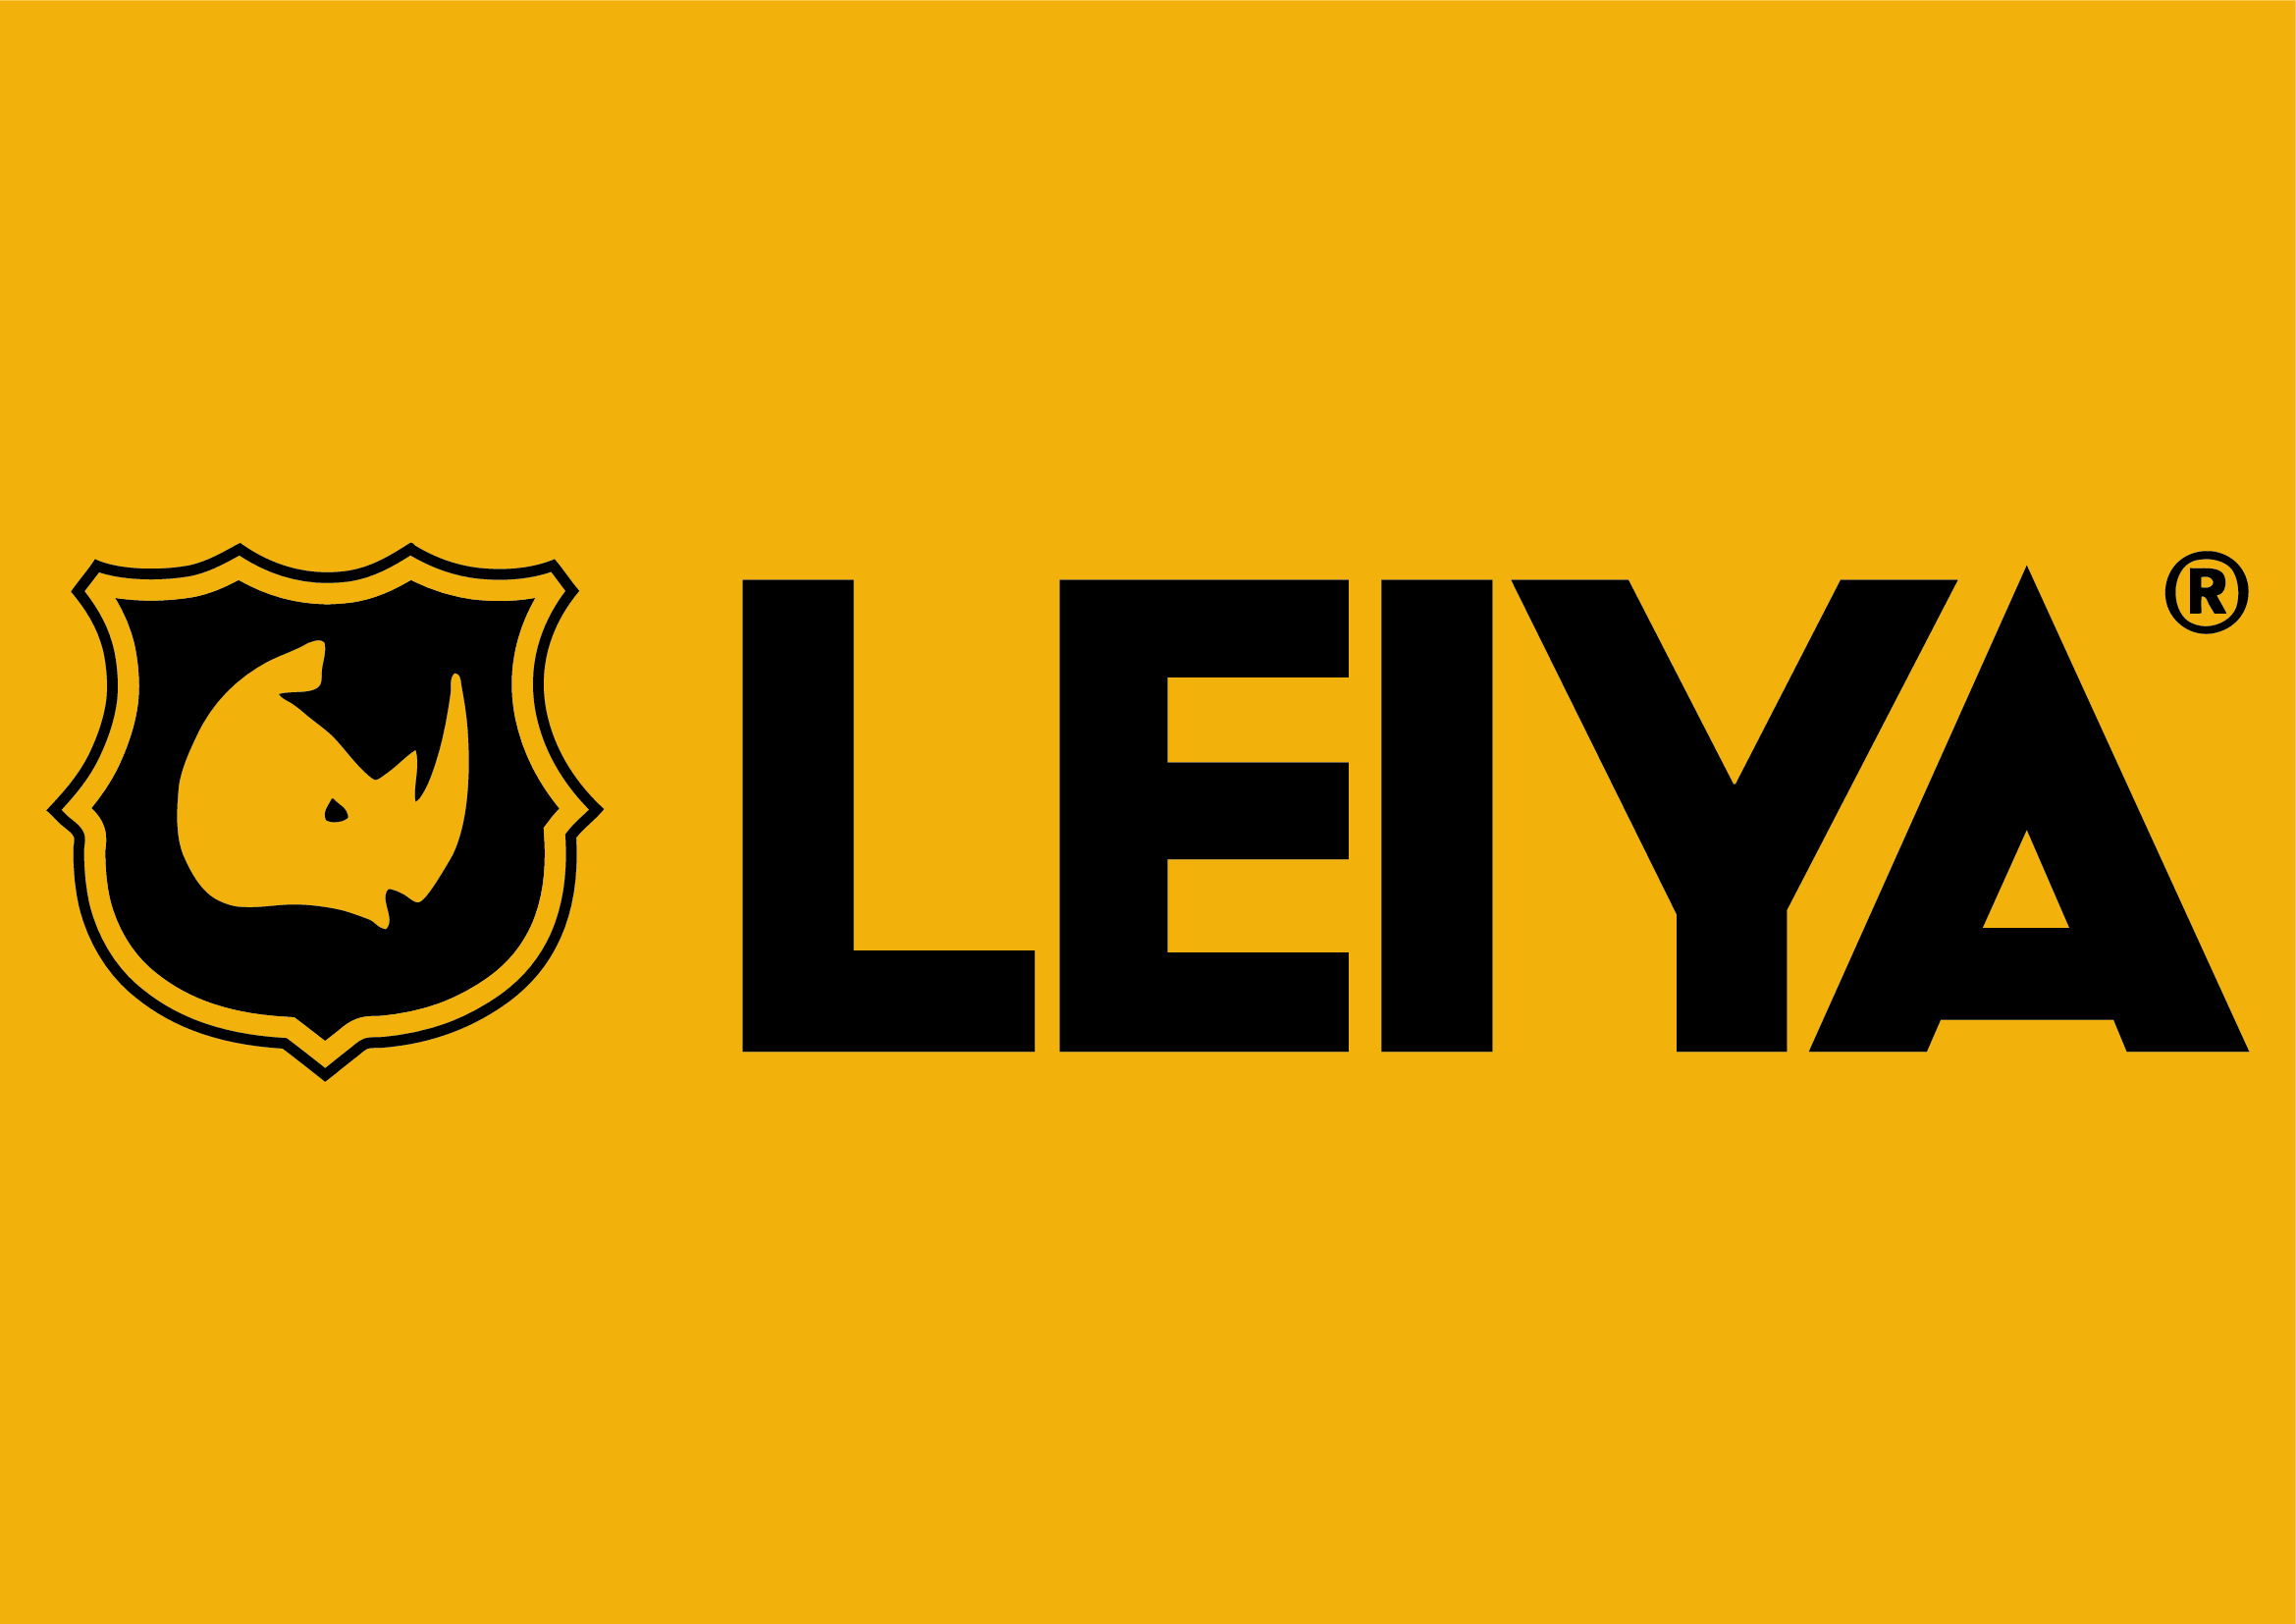 Leiya